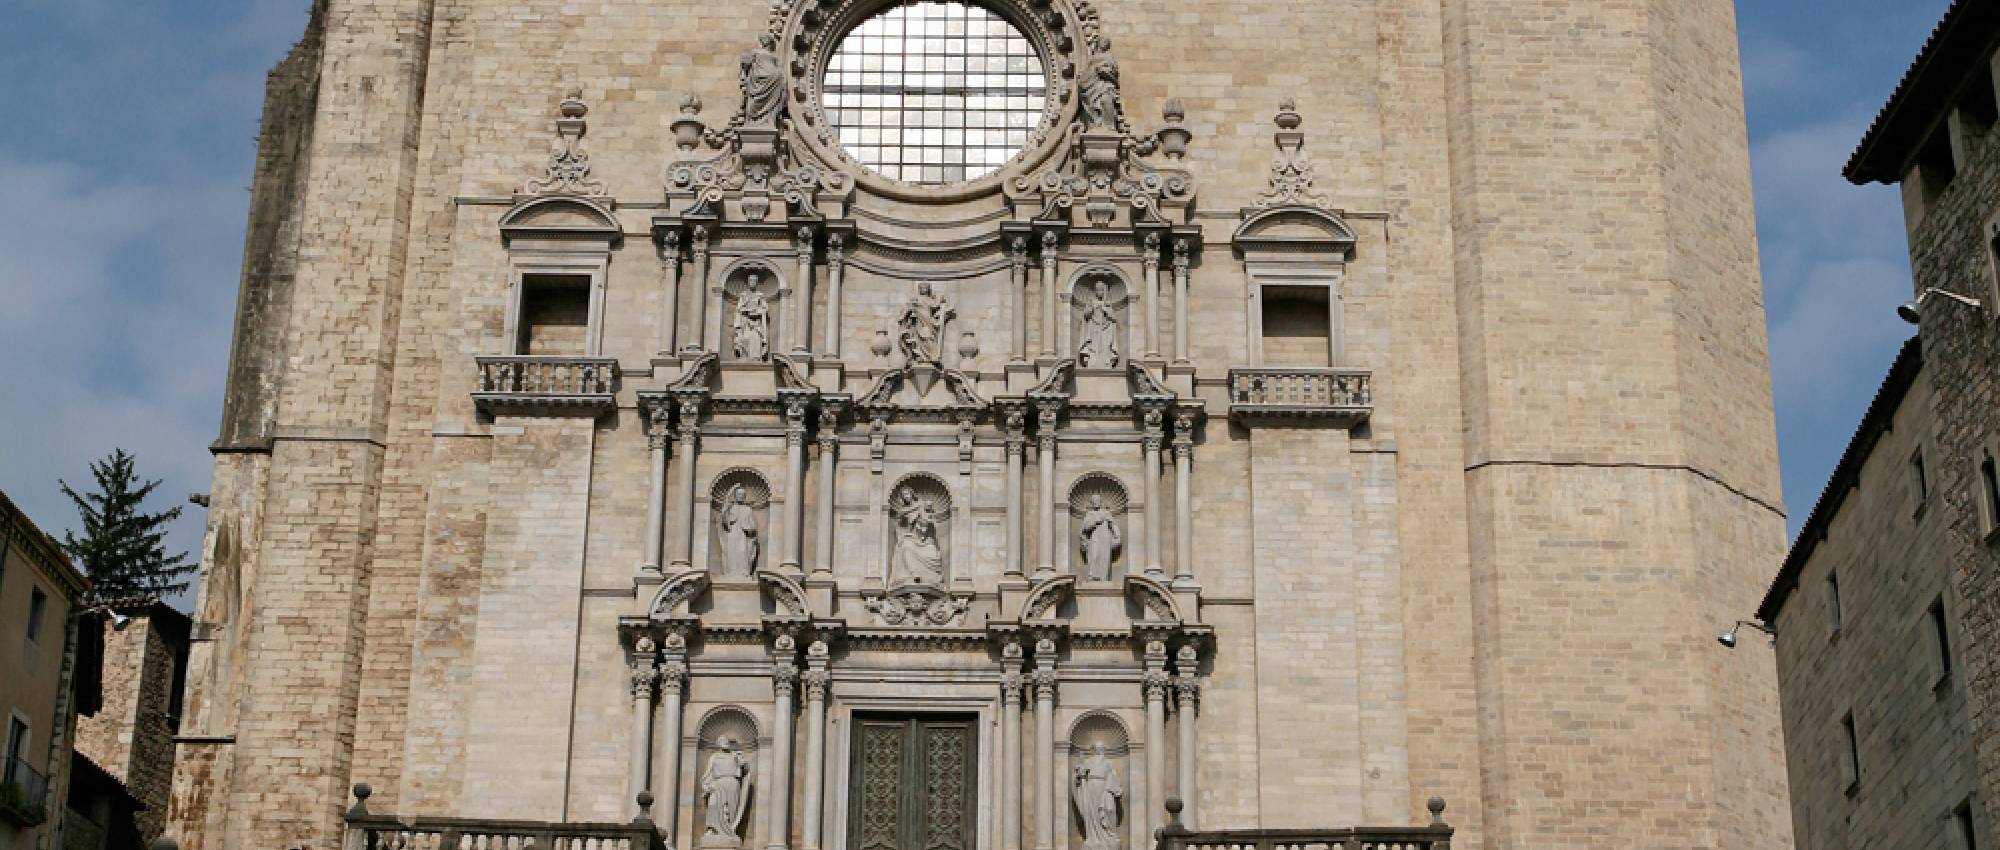 Claustro y campanario de la catedral de Girona | Patrimonio Cultural.  Generalitat de Cataluña.